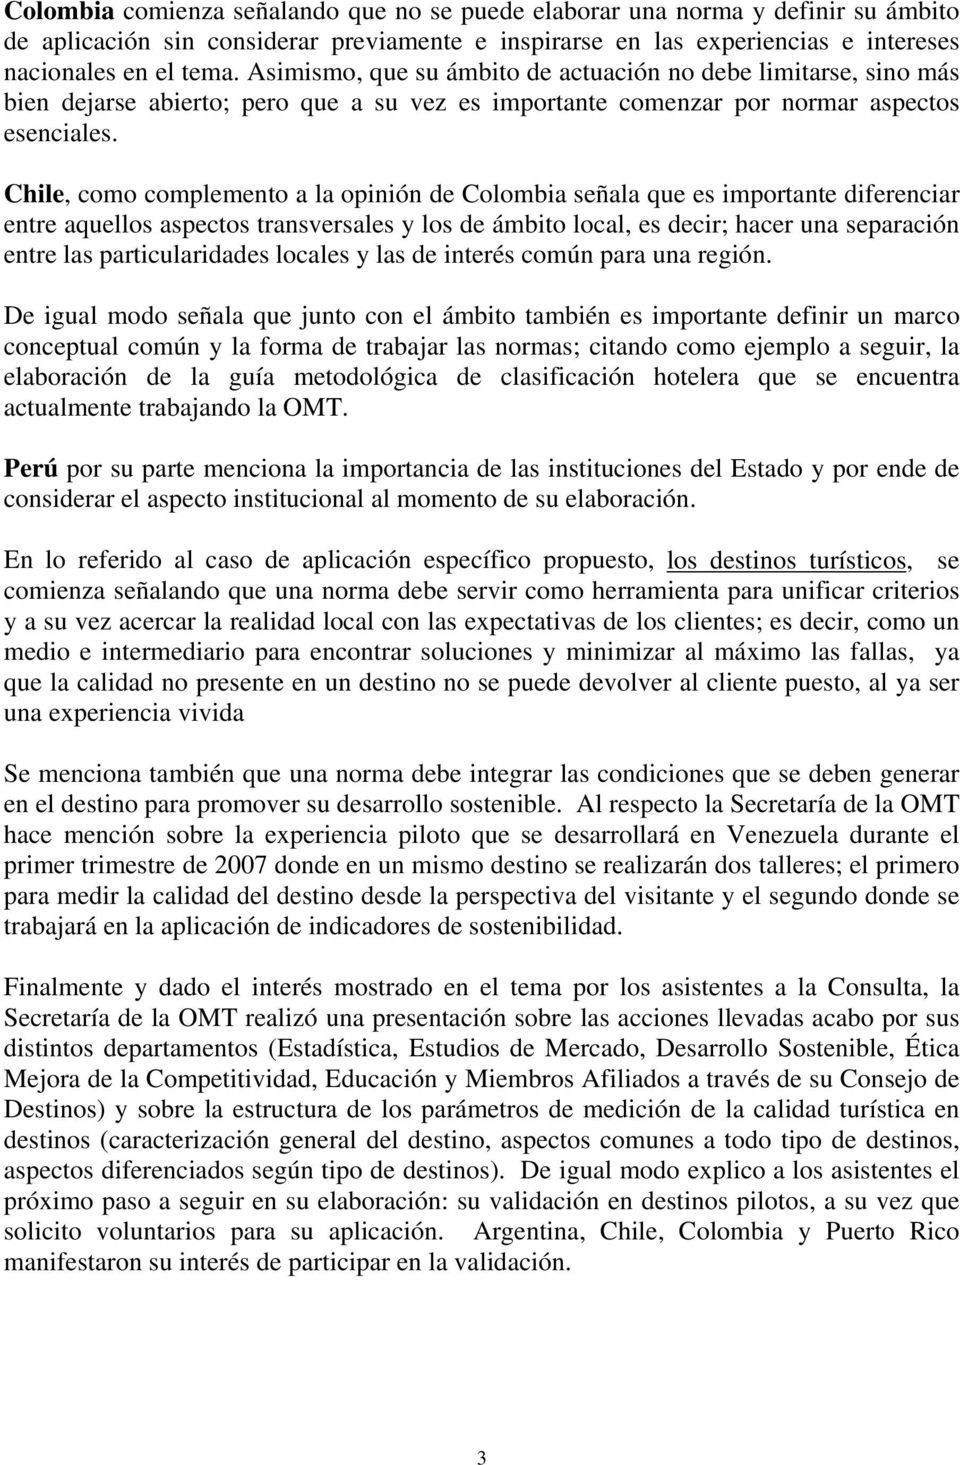 Chile, como complemento a la opinión de Colombia señala que es importante diferenciar entre aquellos aspectos transversales y los de ámbito local, es decir; hacer una separación entre las